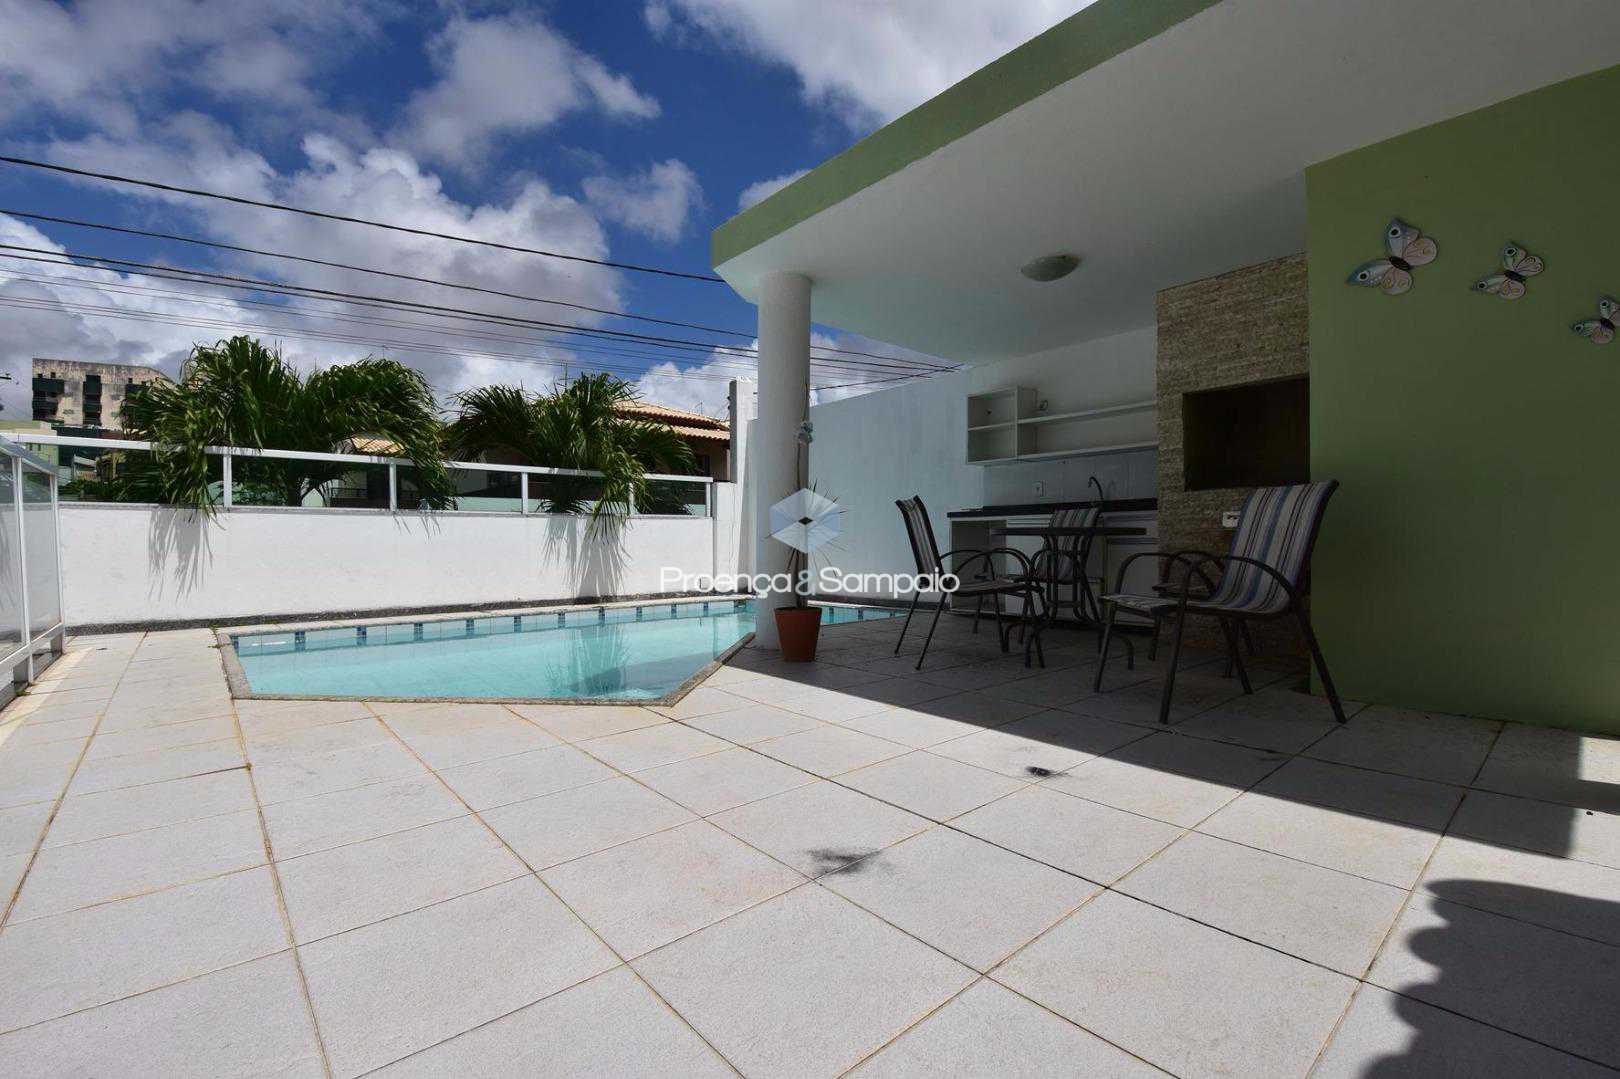 FOTO1 - Casa em Condomínio 4 quartos à venda Lauro de Freitas,BA - R$ 680.000 - PSCN40012 - 3